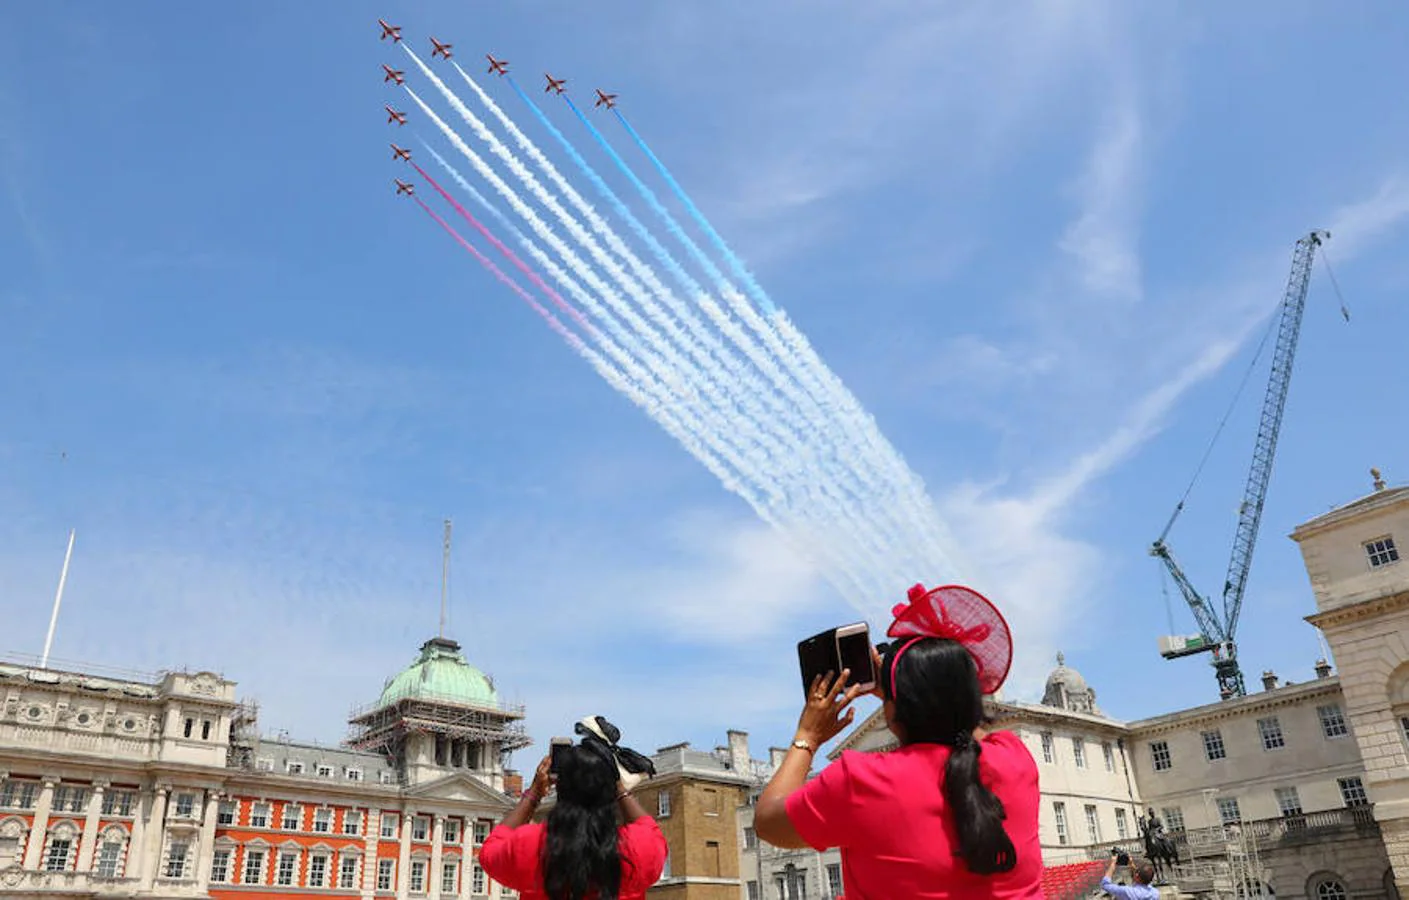 Espectáculo aéreo. El desfile se ha complementado con una exhibición aérea en la que los aviones de la guardia dibujaban la bandera británica en el cielo